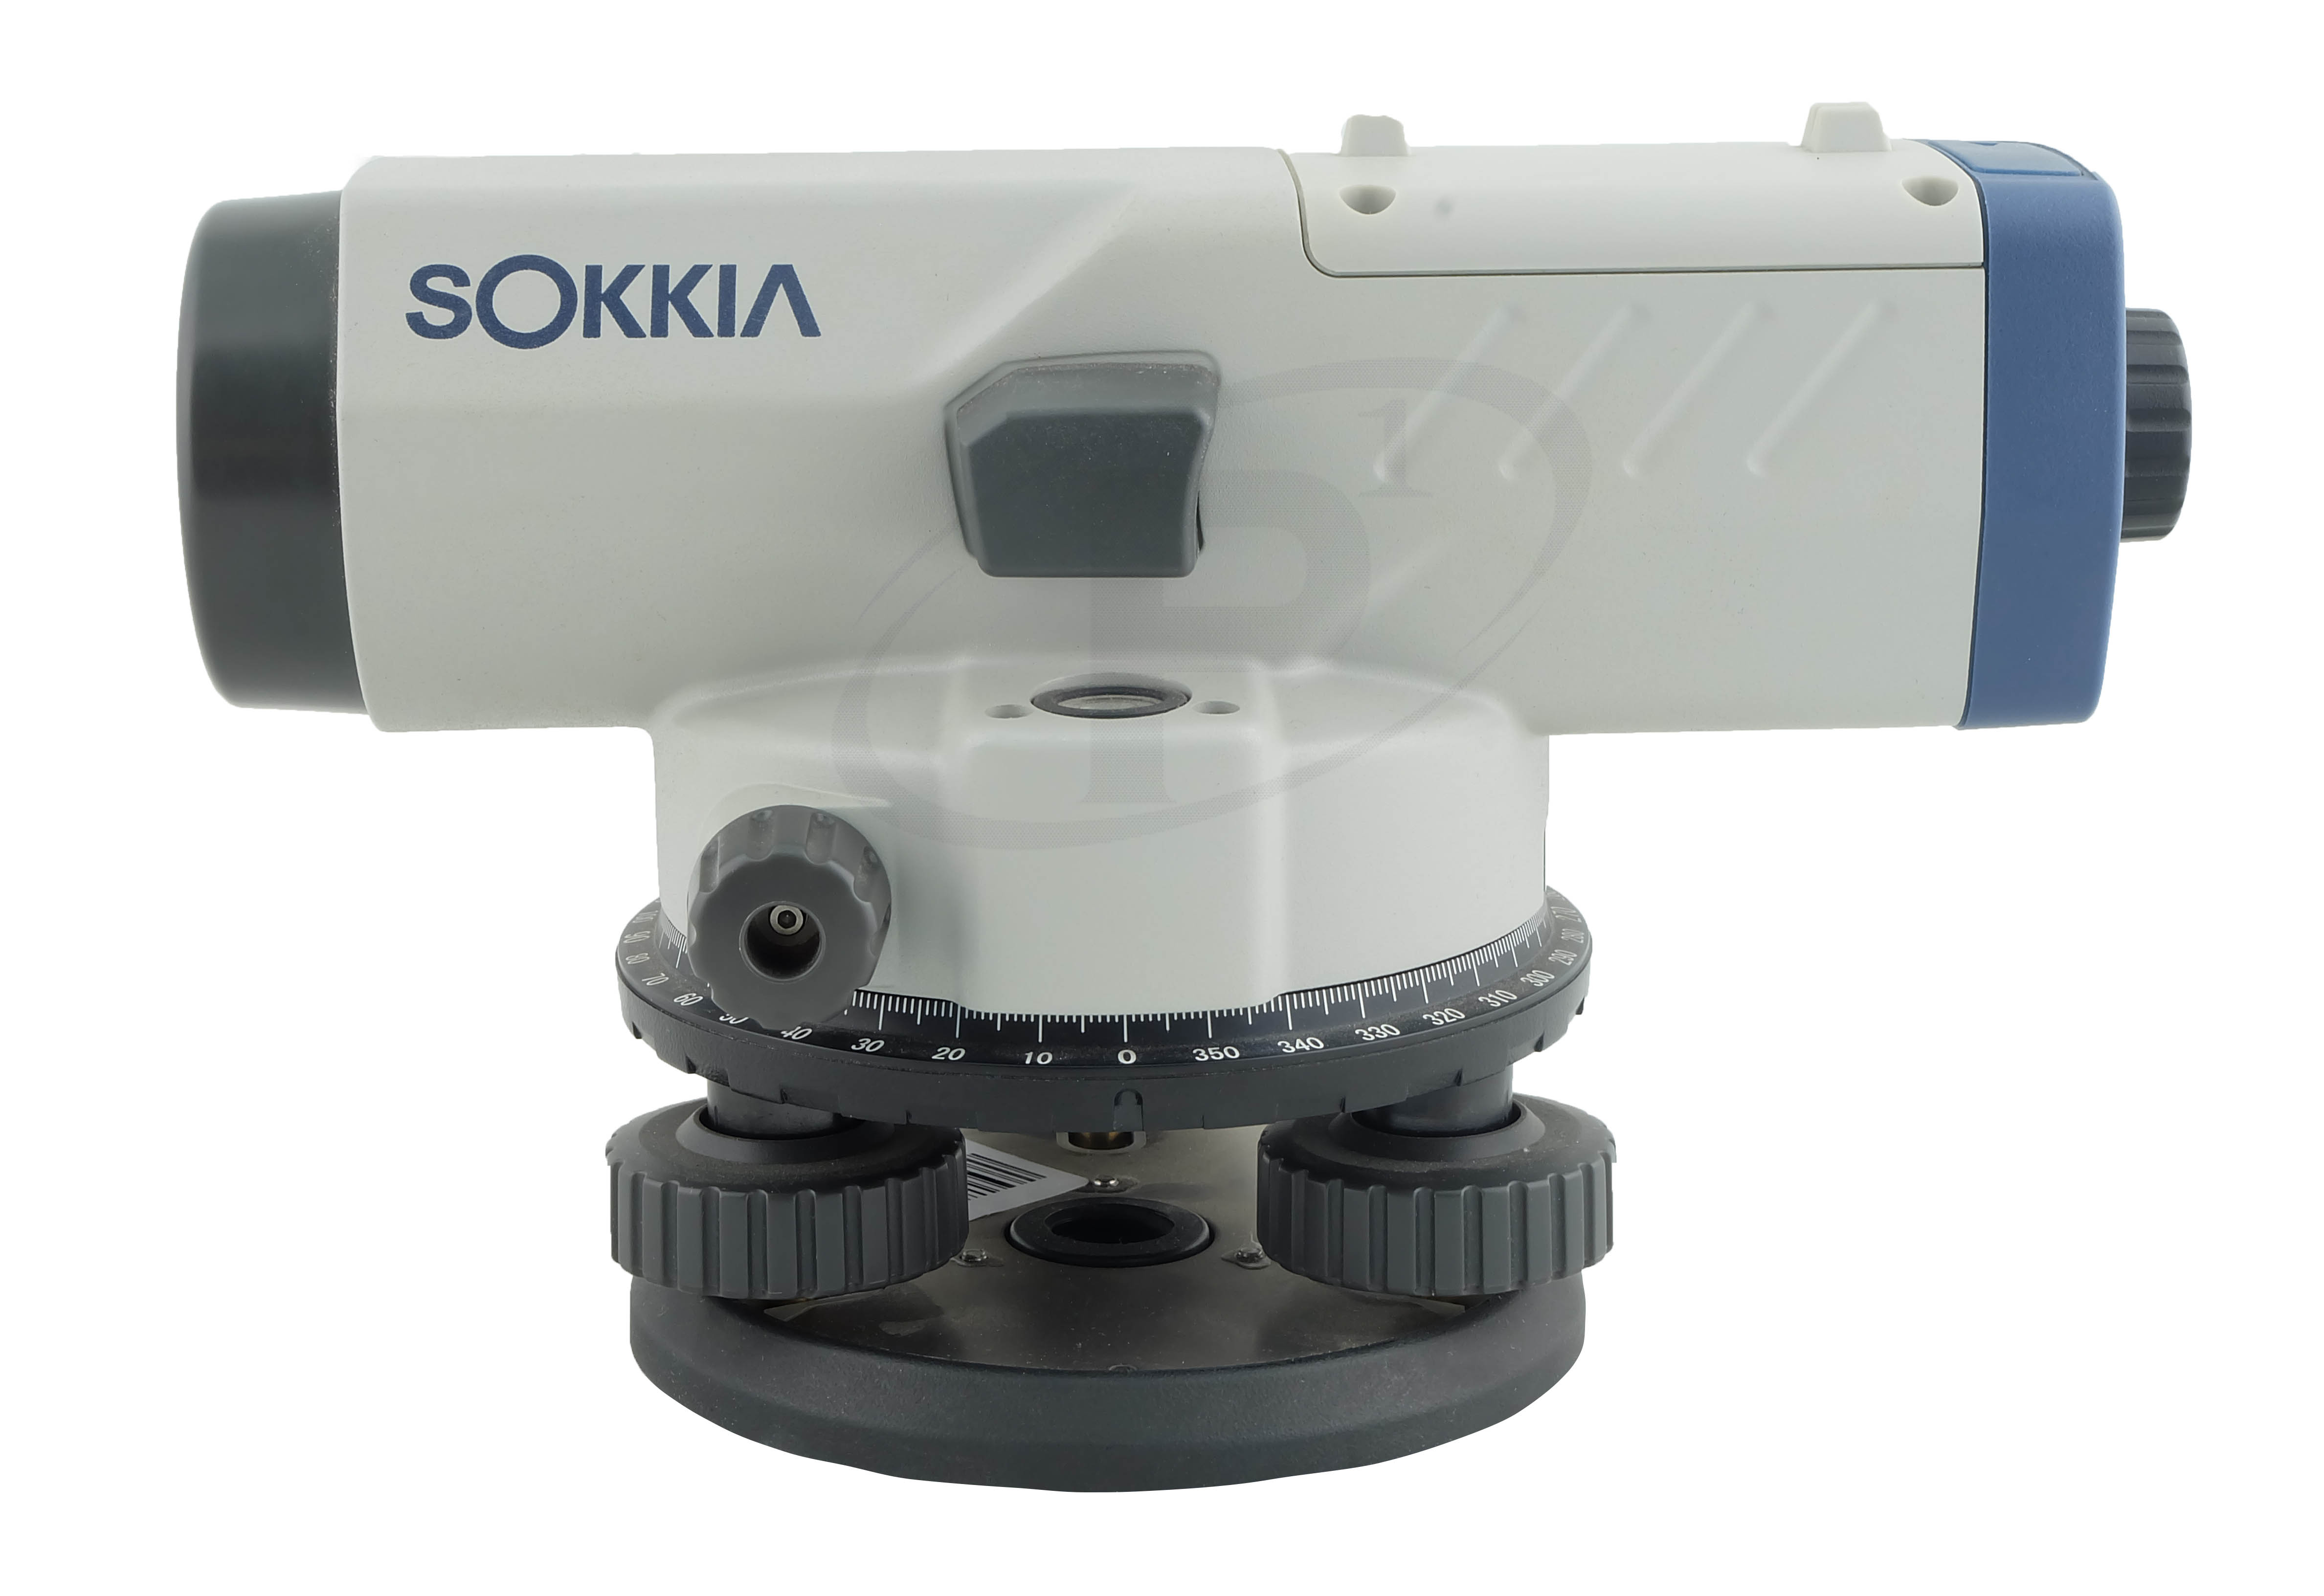 กล้องระดับ SOKKIA B40A ขยาย 24 เท่า